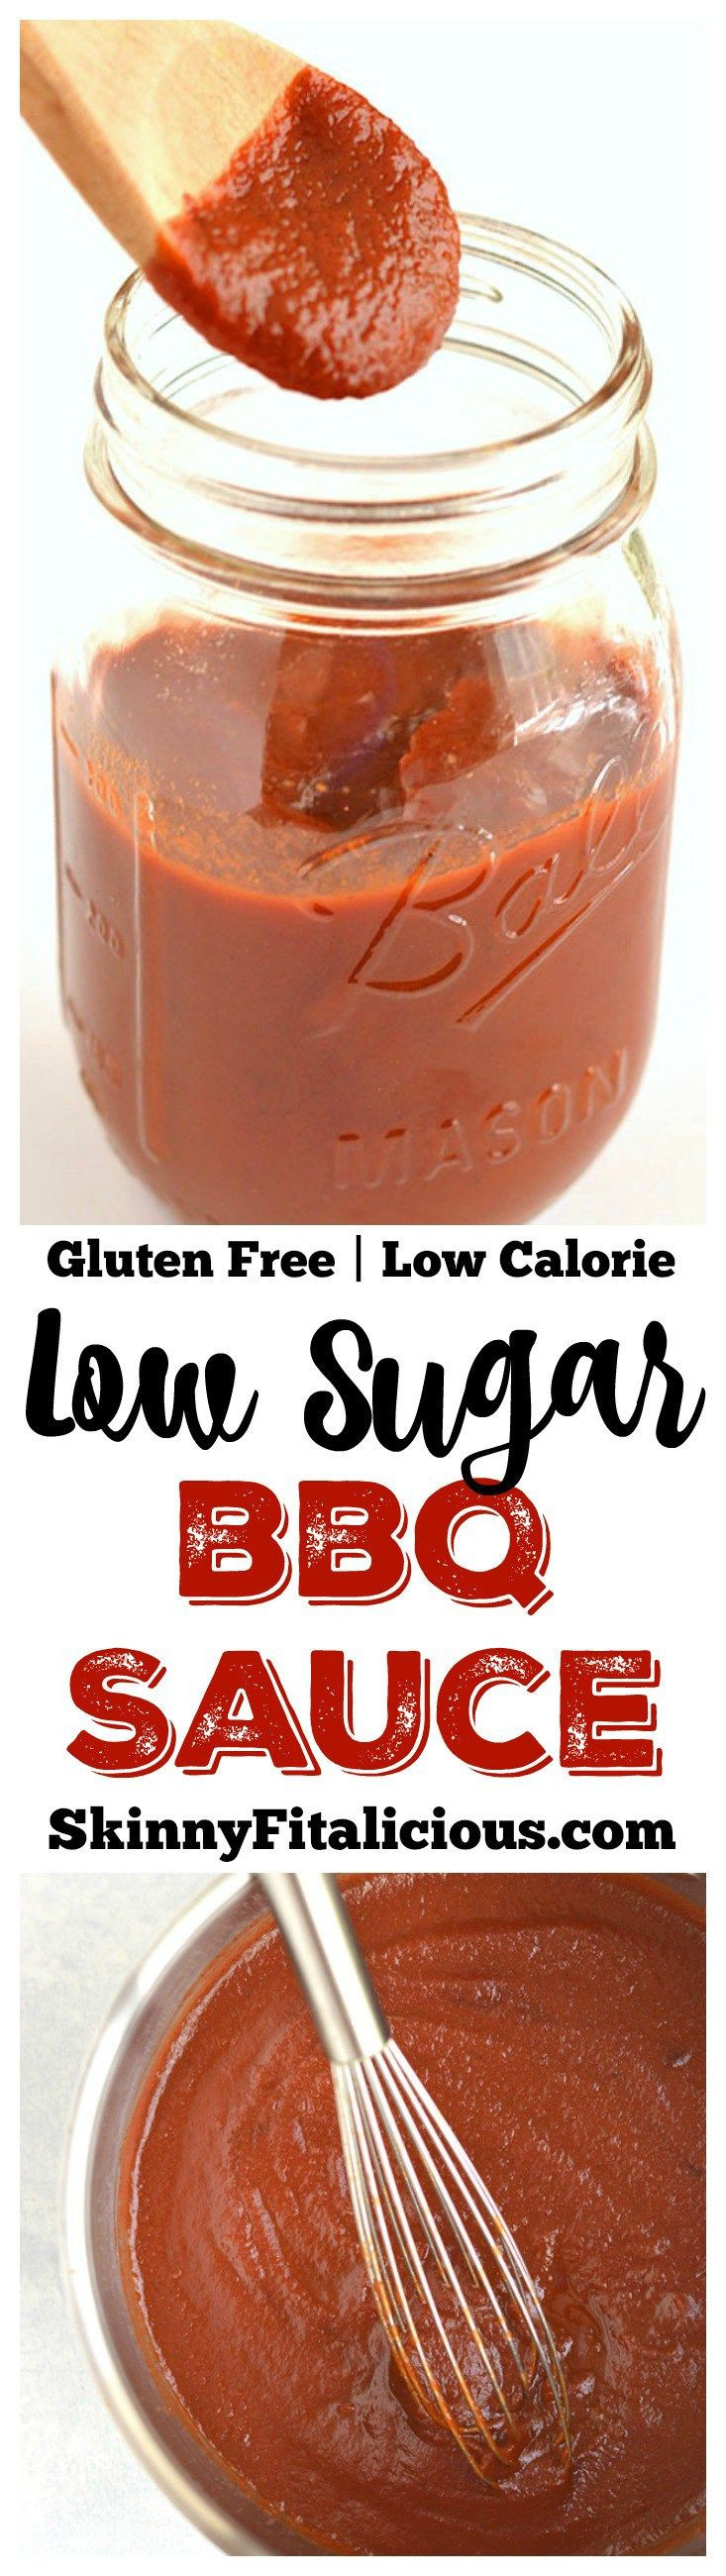 Low Calorie Bbq Sauce
 25 best ideas about Low Calorie Salad on Pinterest